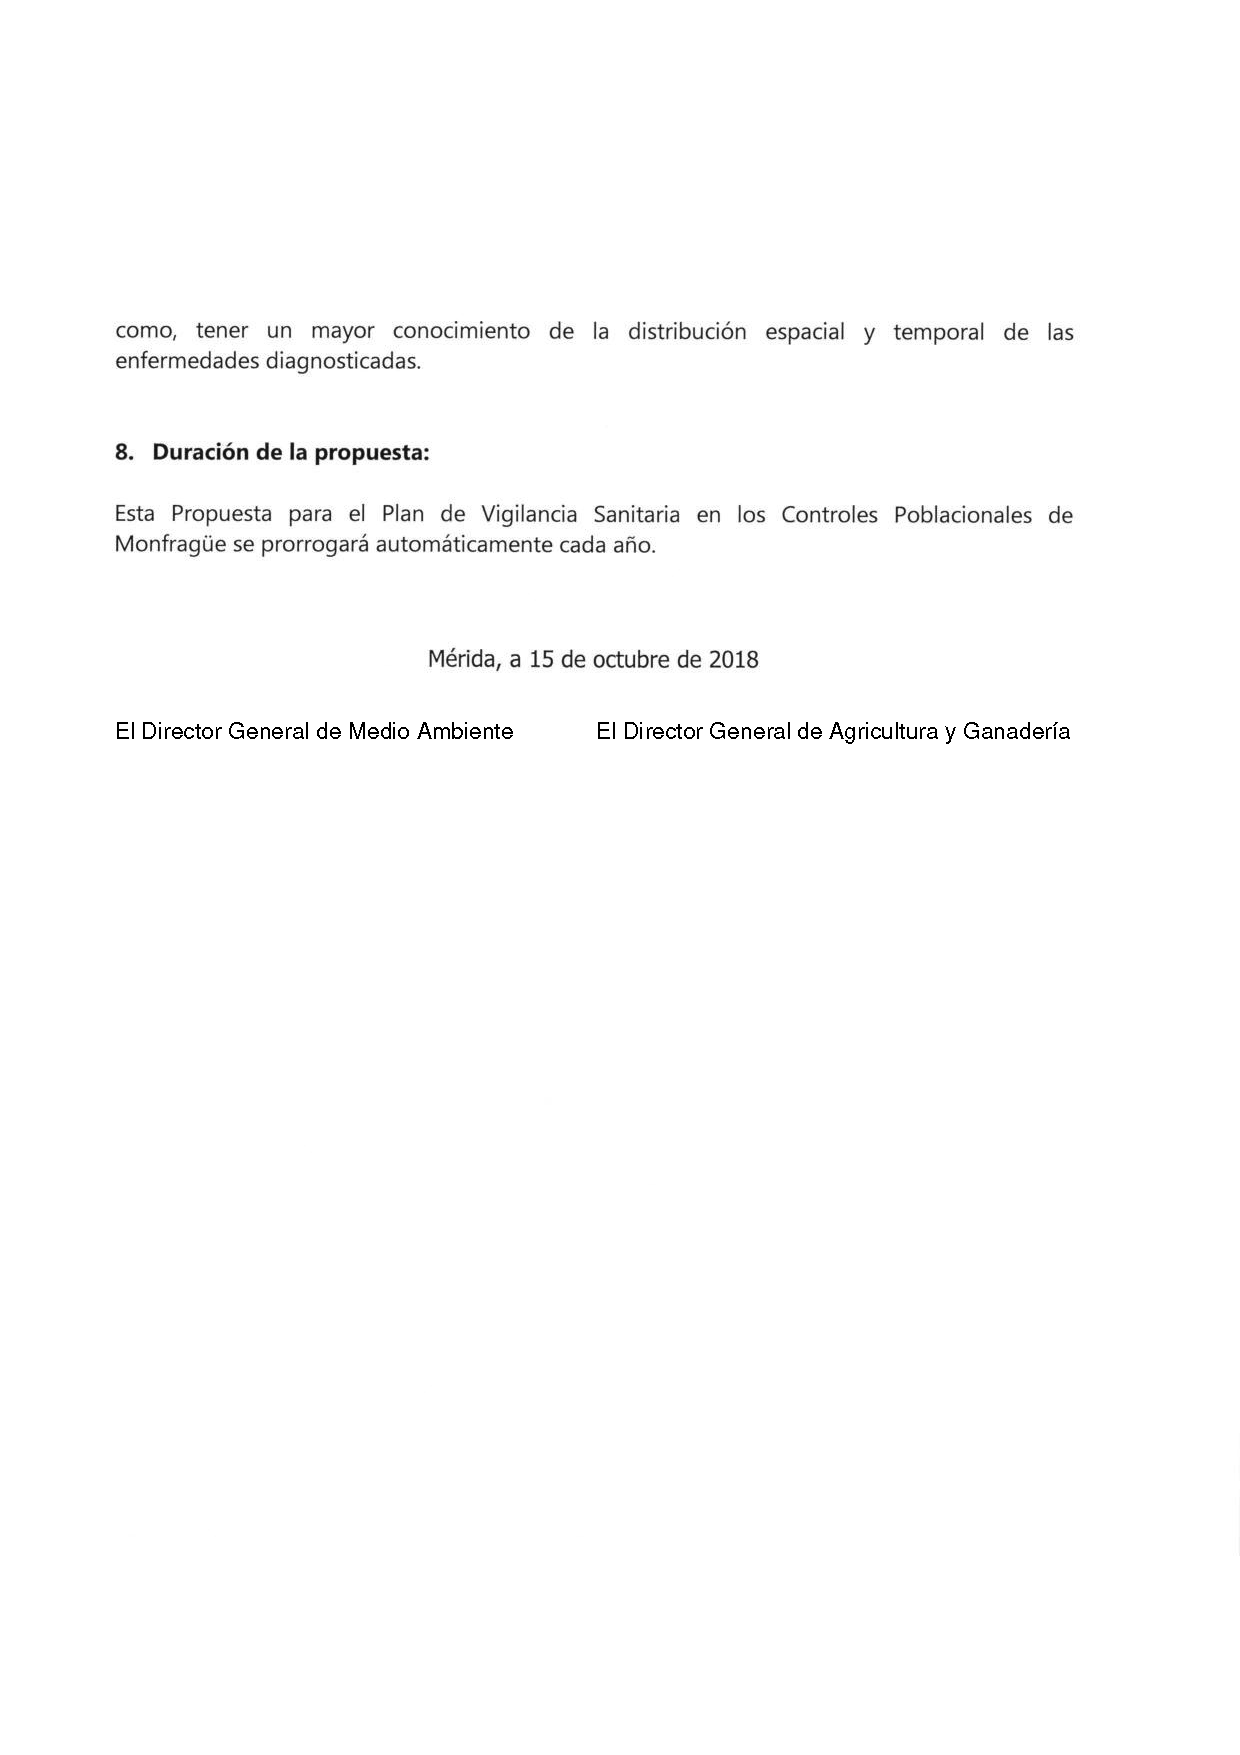 PROGRAMA DE ACCION SELECTIVA DE LAS POBLACIONES DE UNGULADOS SILVESTRES EN EL PARQUE NACIONAL DE MONFRAGUE 2022-2023 Pag 28